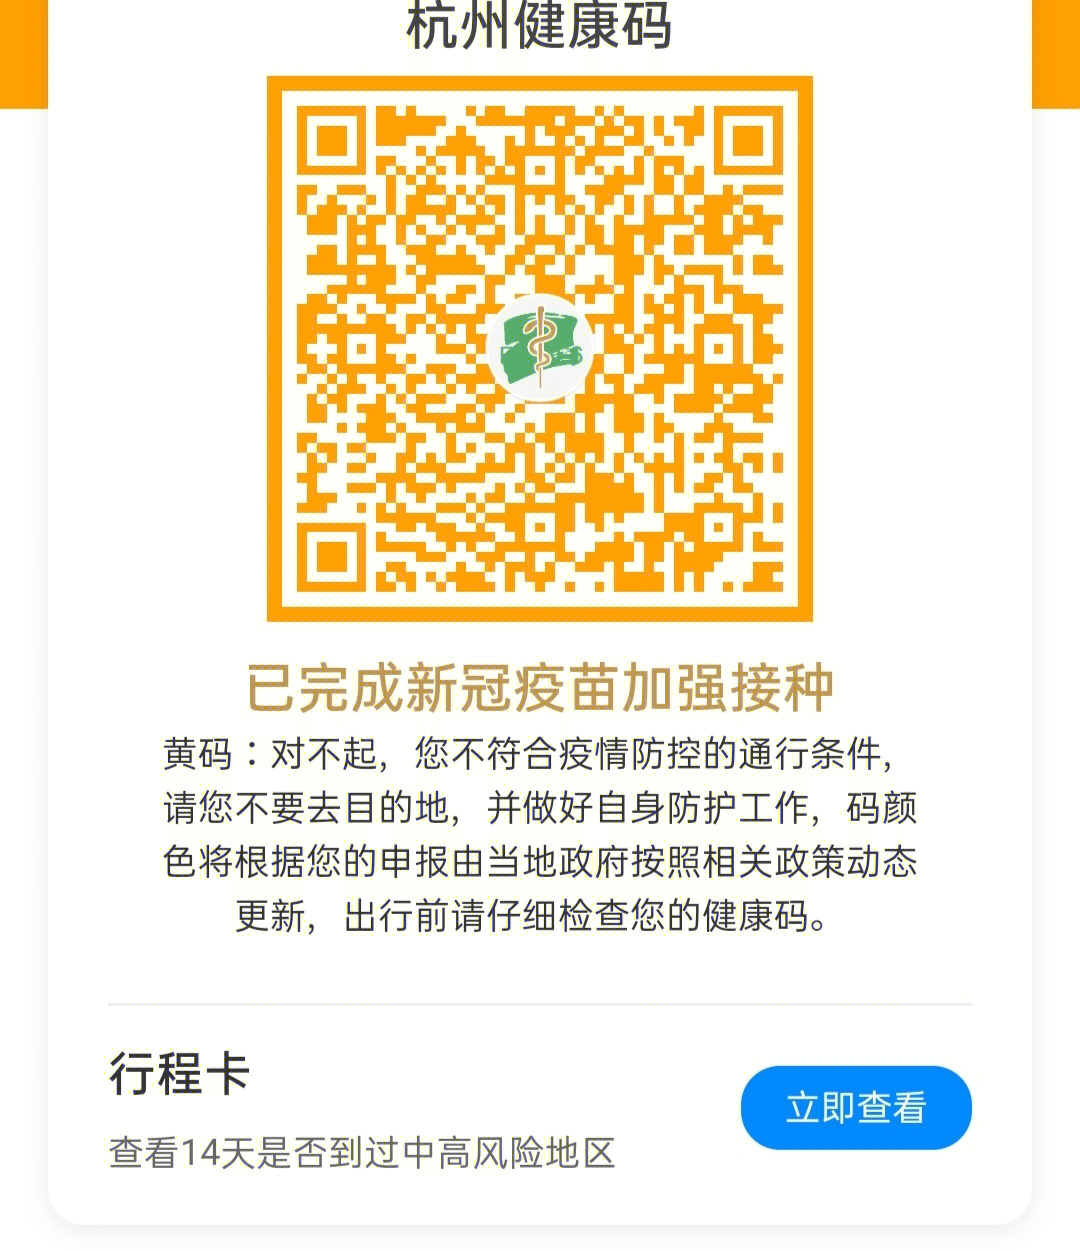 武汉行程码黄码图片图片